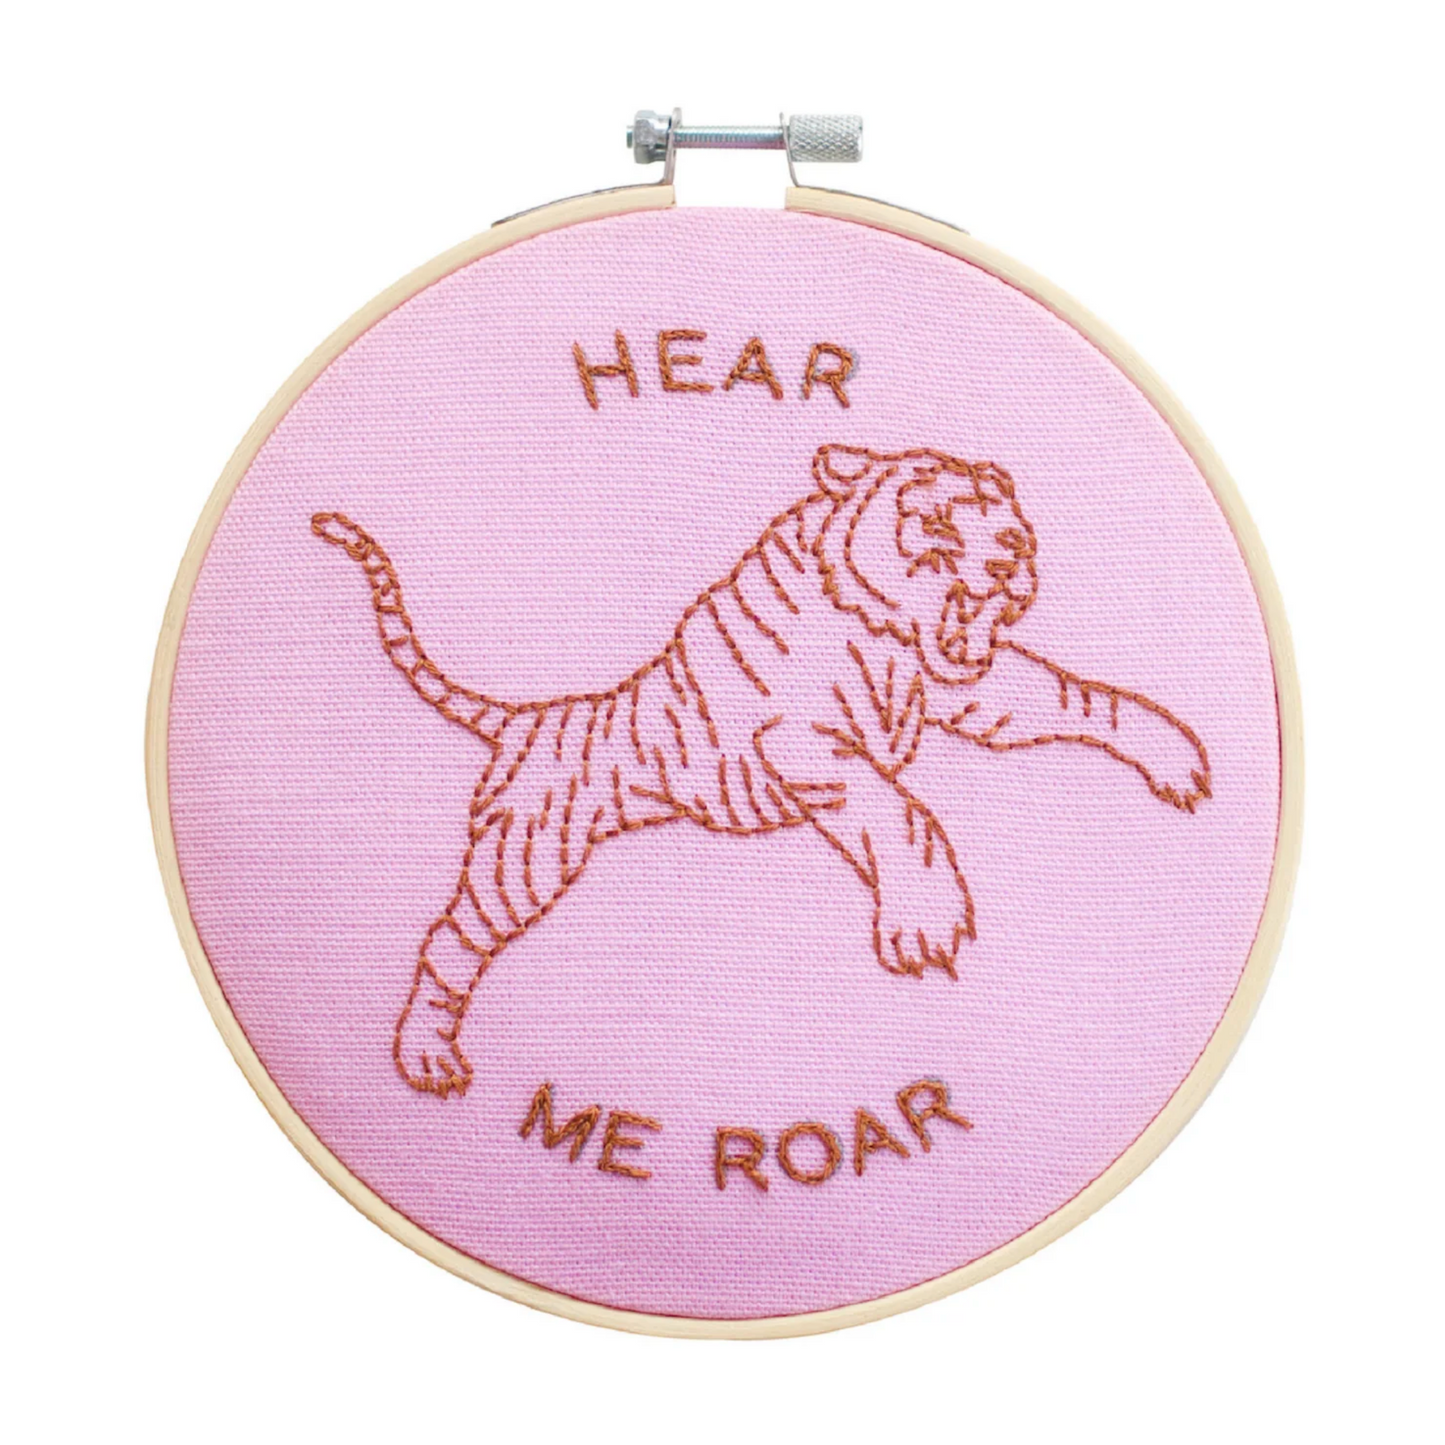 Hear Me Roar Embroidery Kit